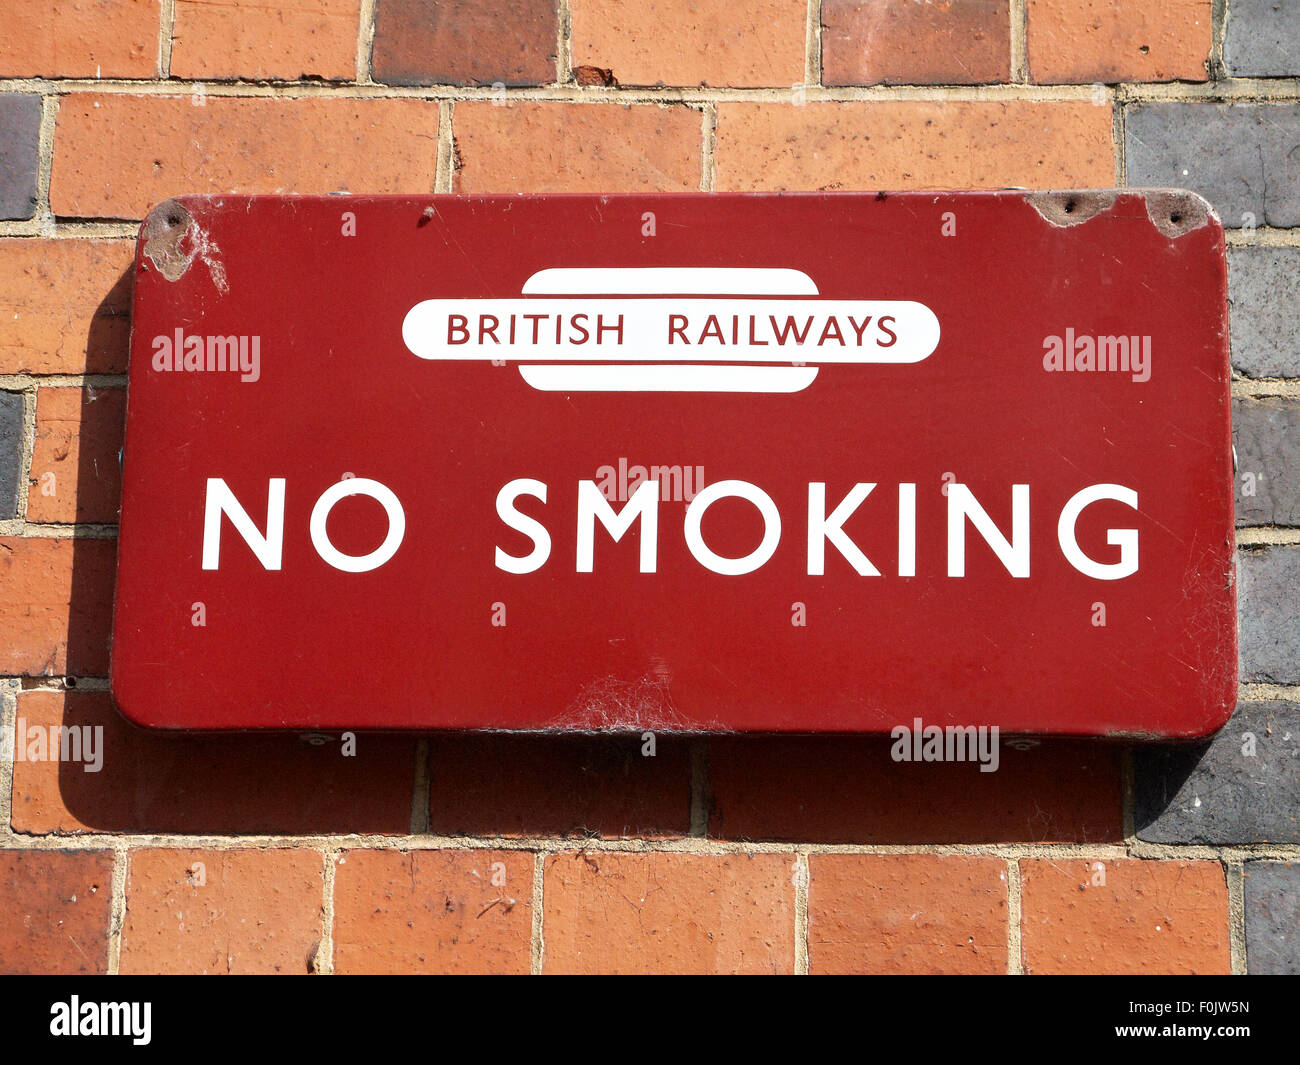 British Railways No Smoking sign Stock Photo